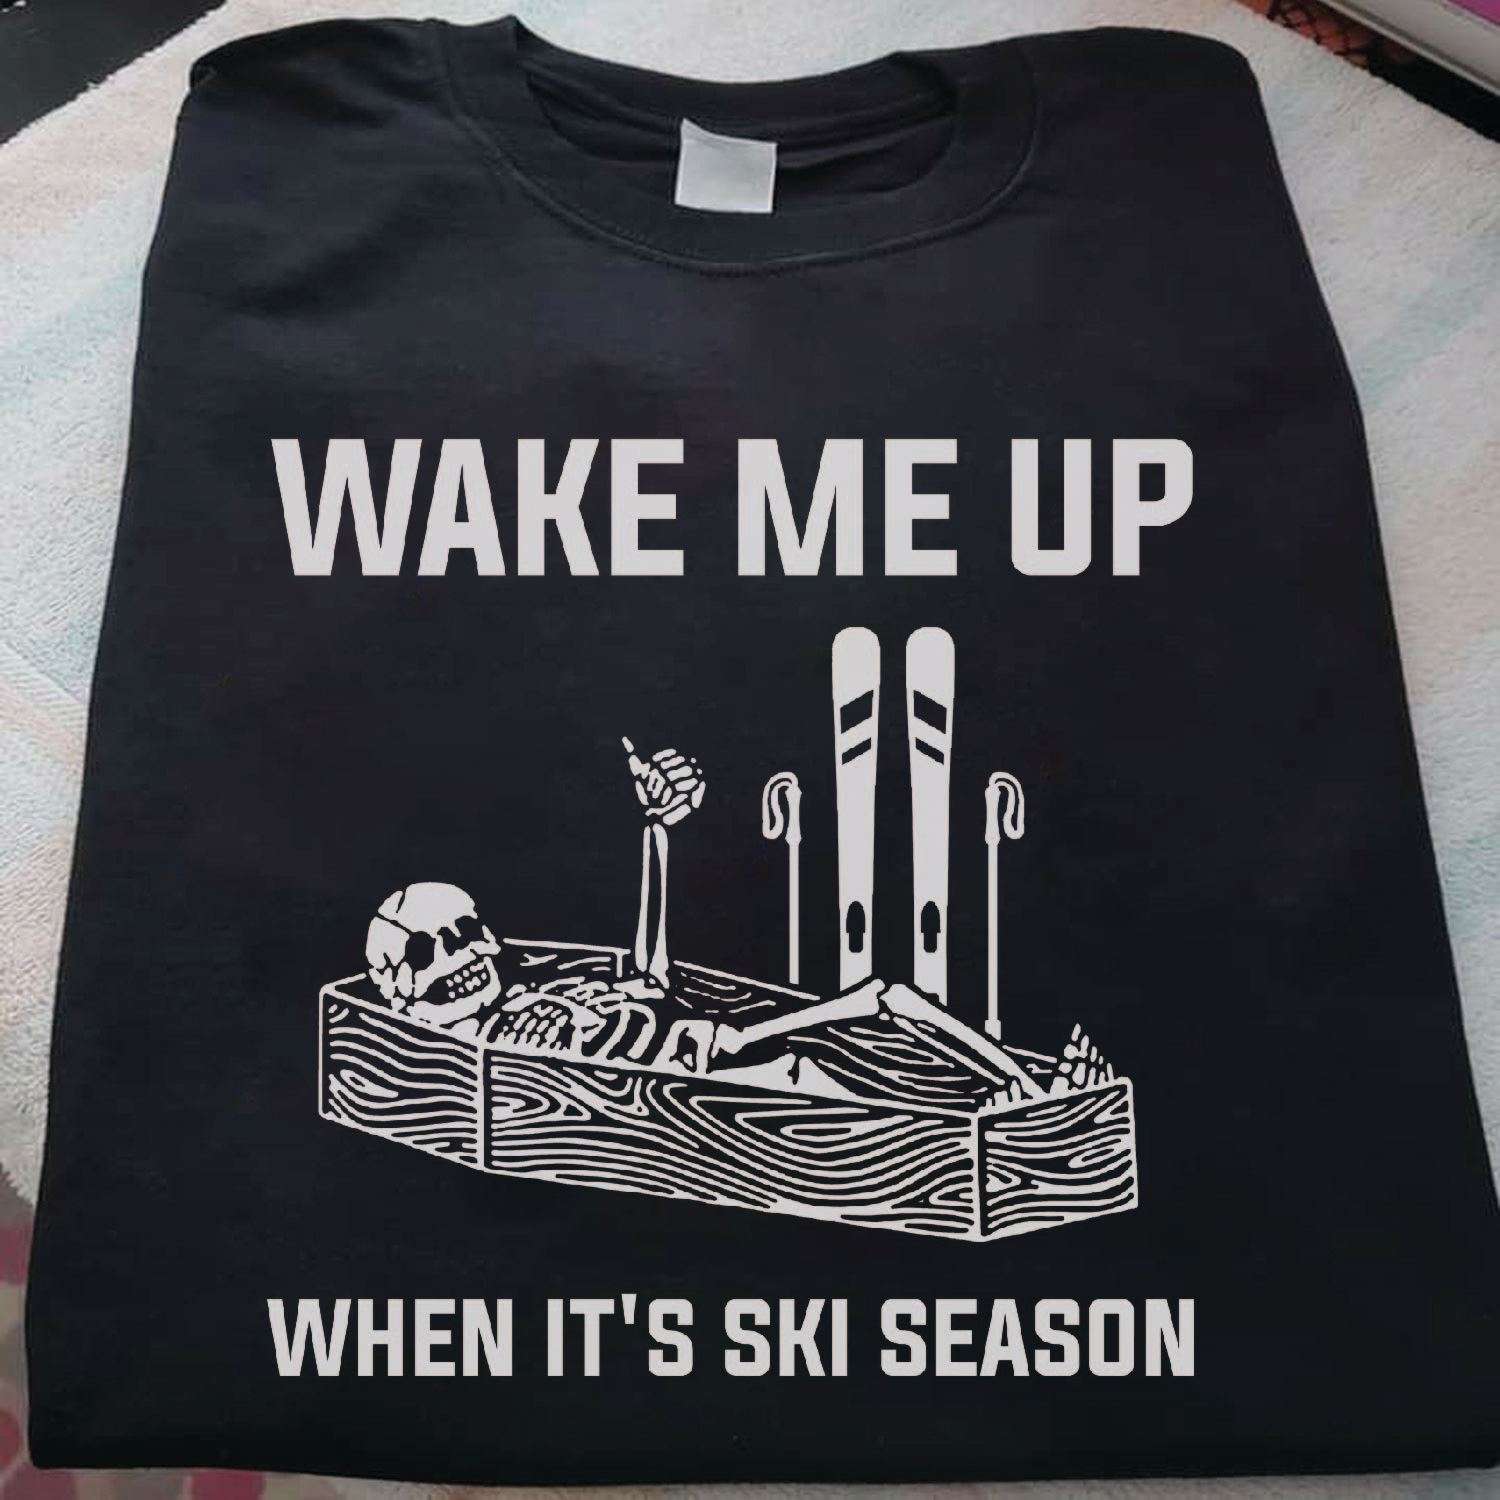 Wake me up when it's ski season - Skull go skiing, gift for skier